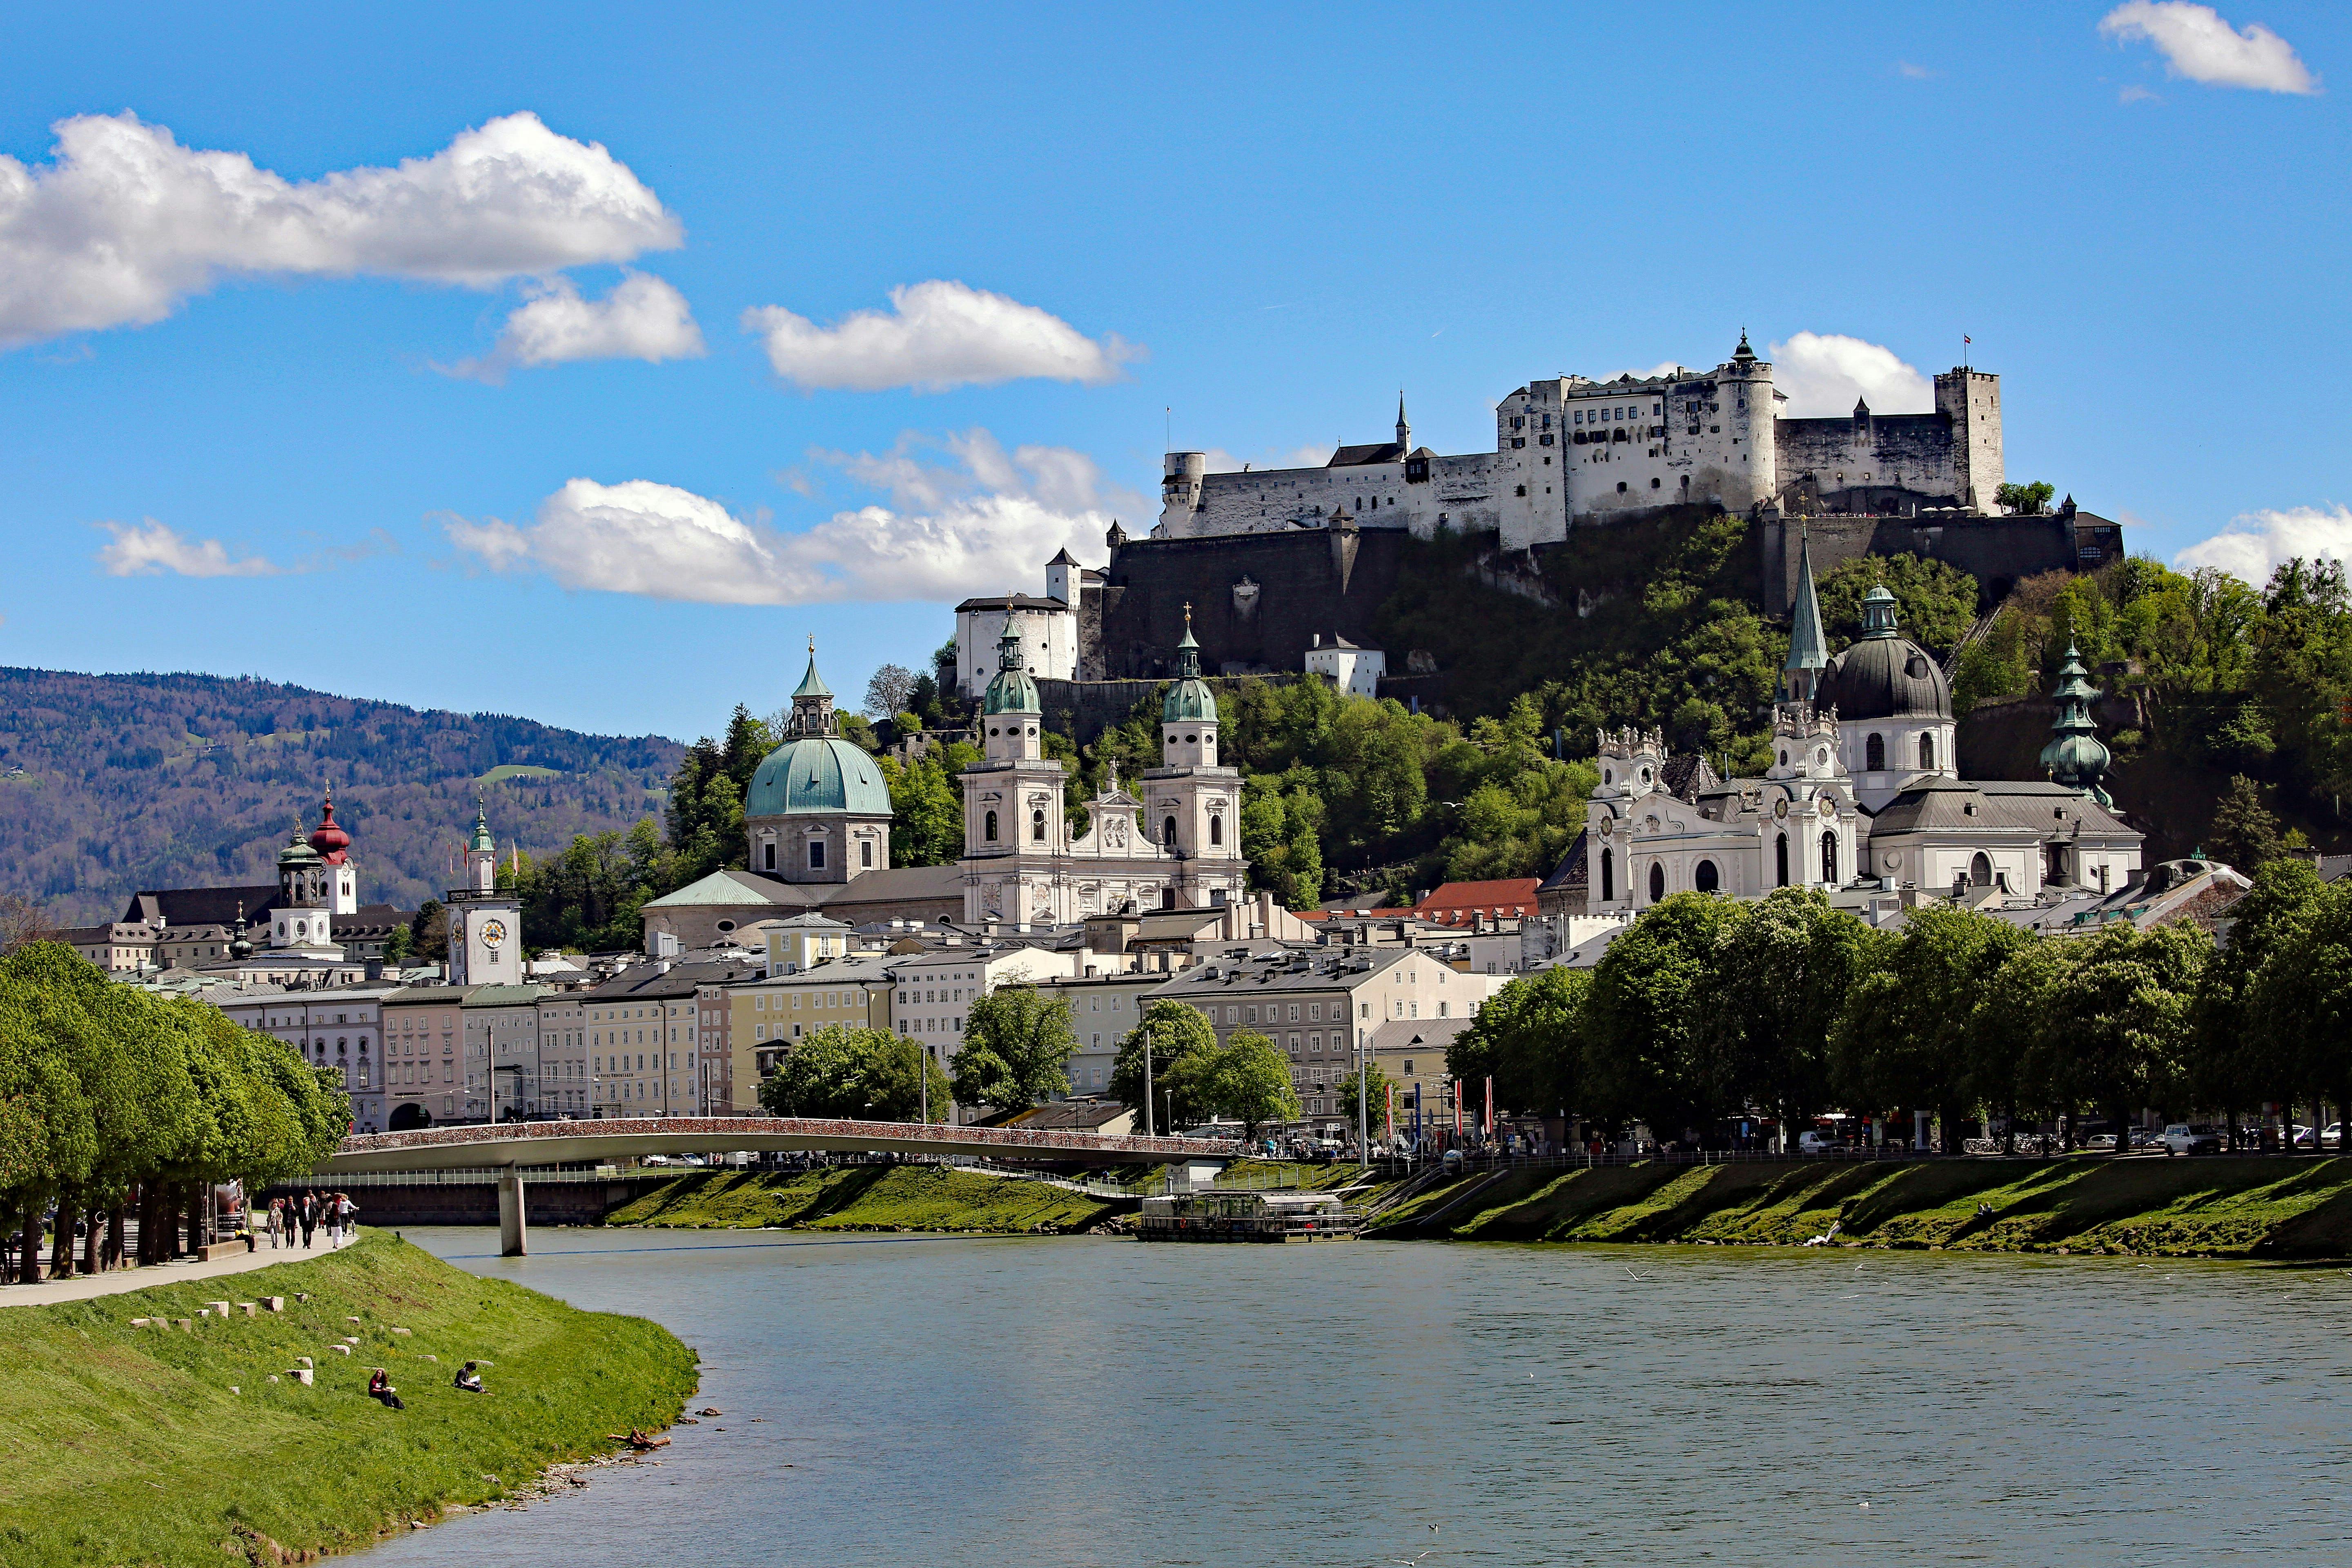 Original Sound of Music Ausflug ab Salzburg